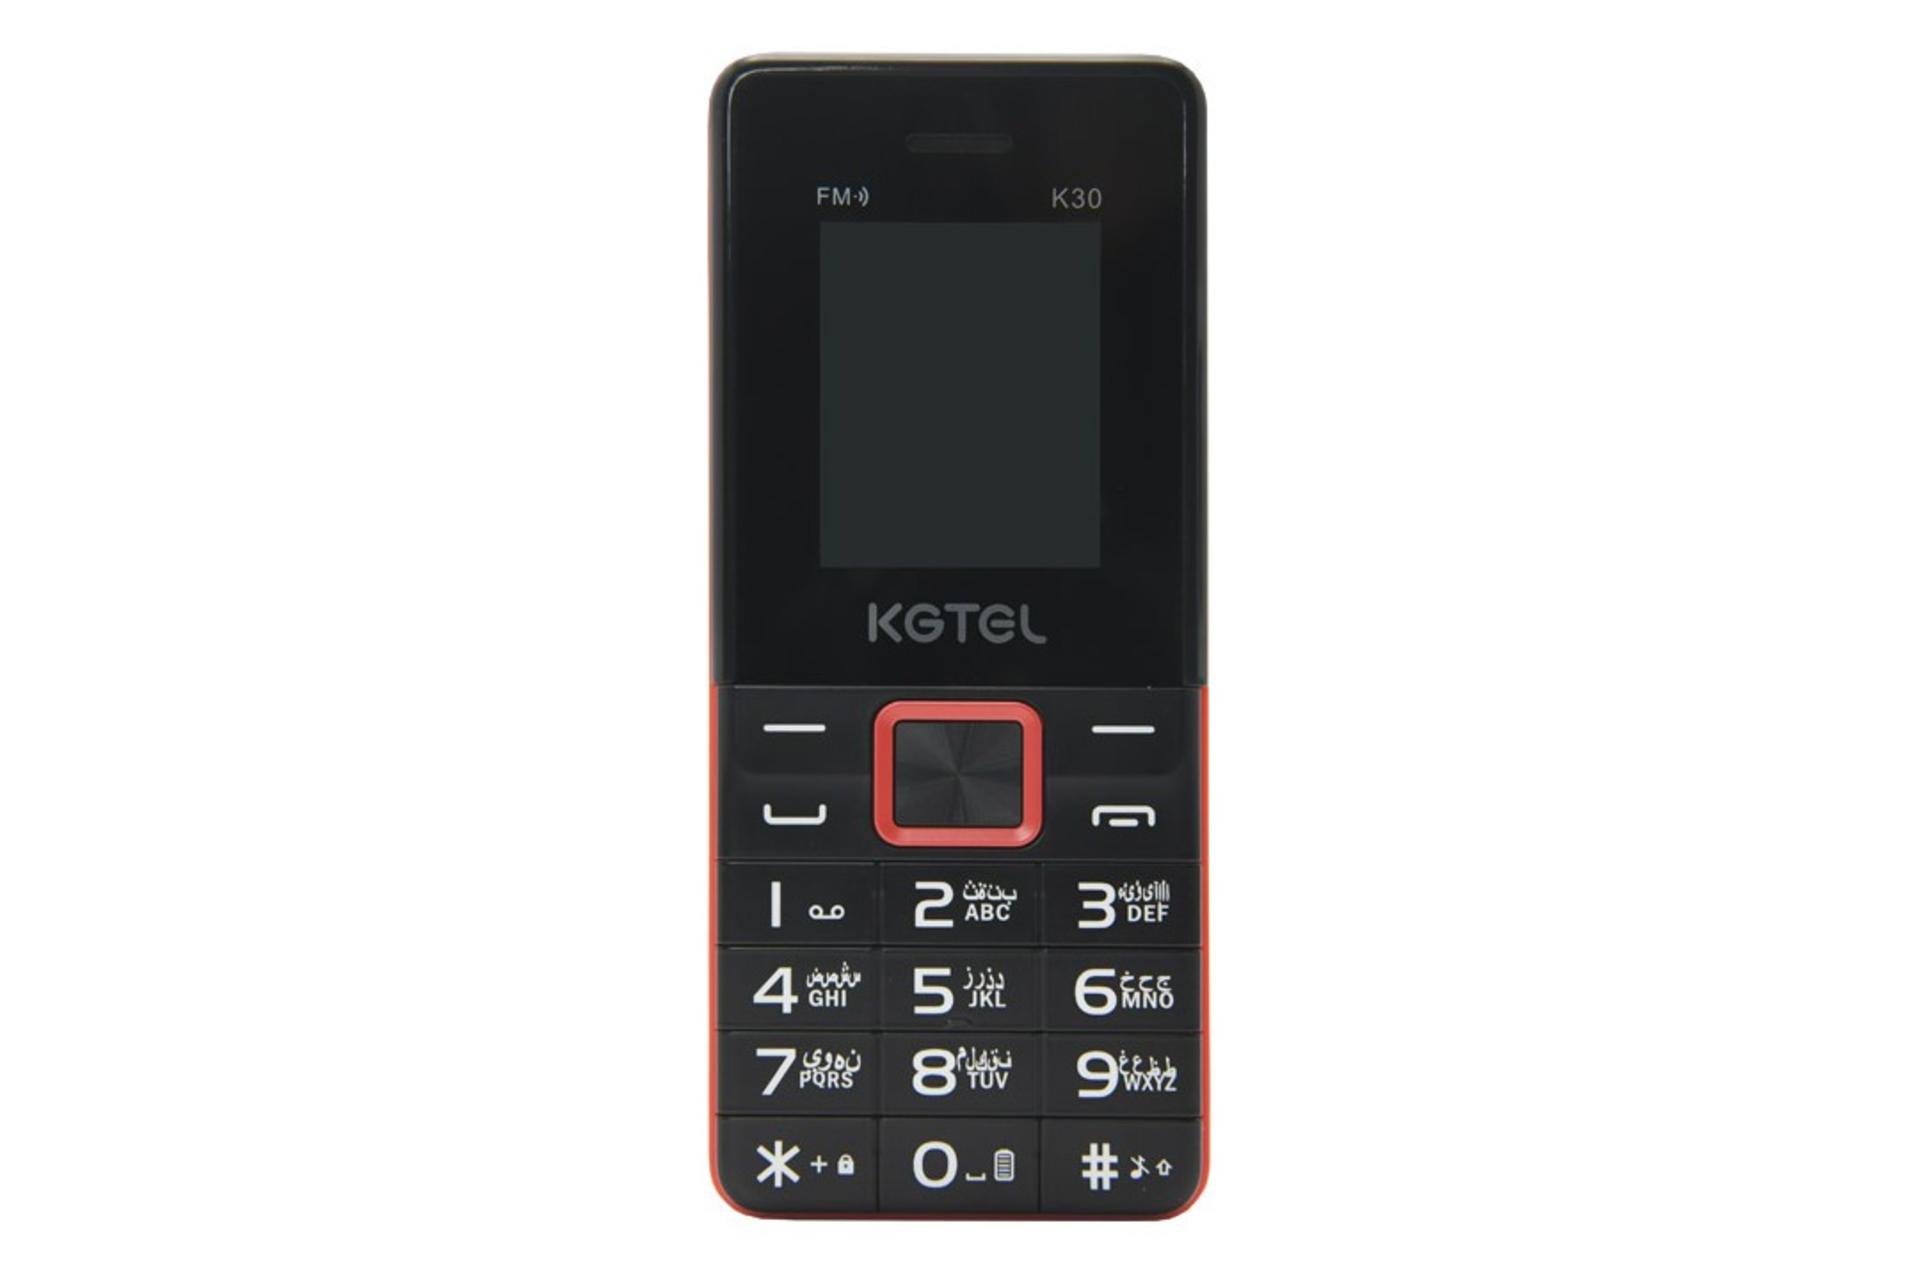 گوشی موبایل کاجیتل KGTEL K30